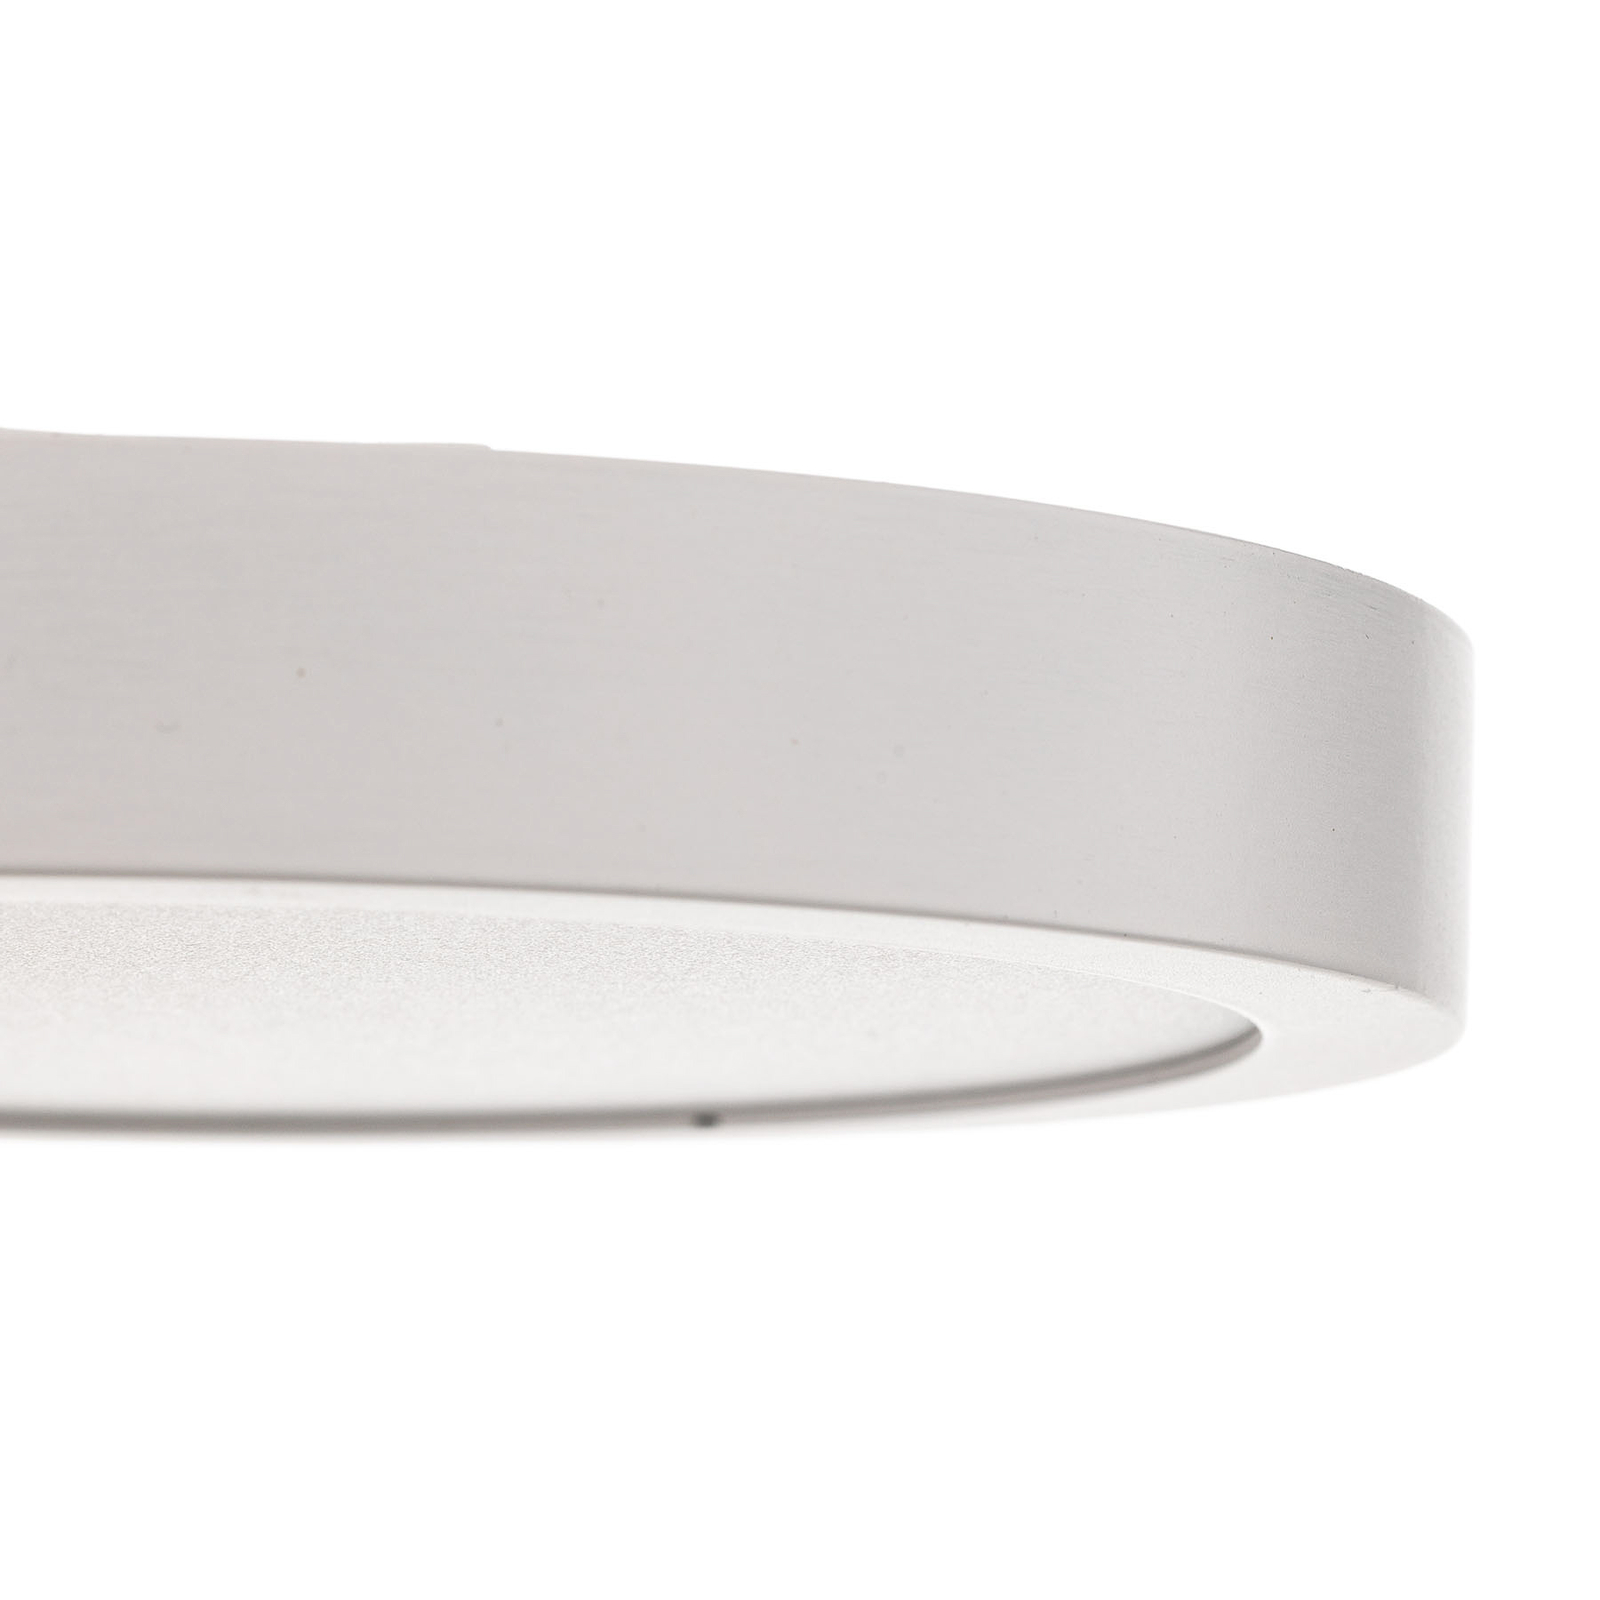 Stropné LED svietidlo Vika, okrúhle, biele, Ø 18cm